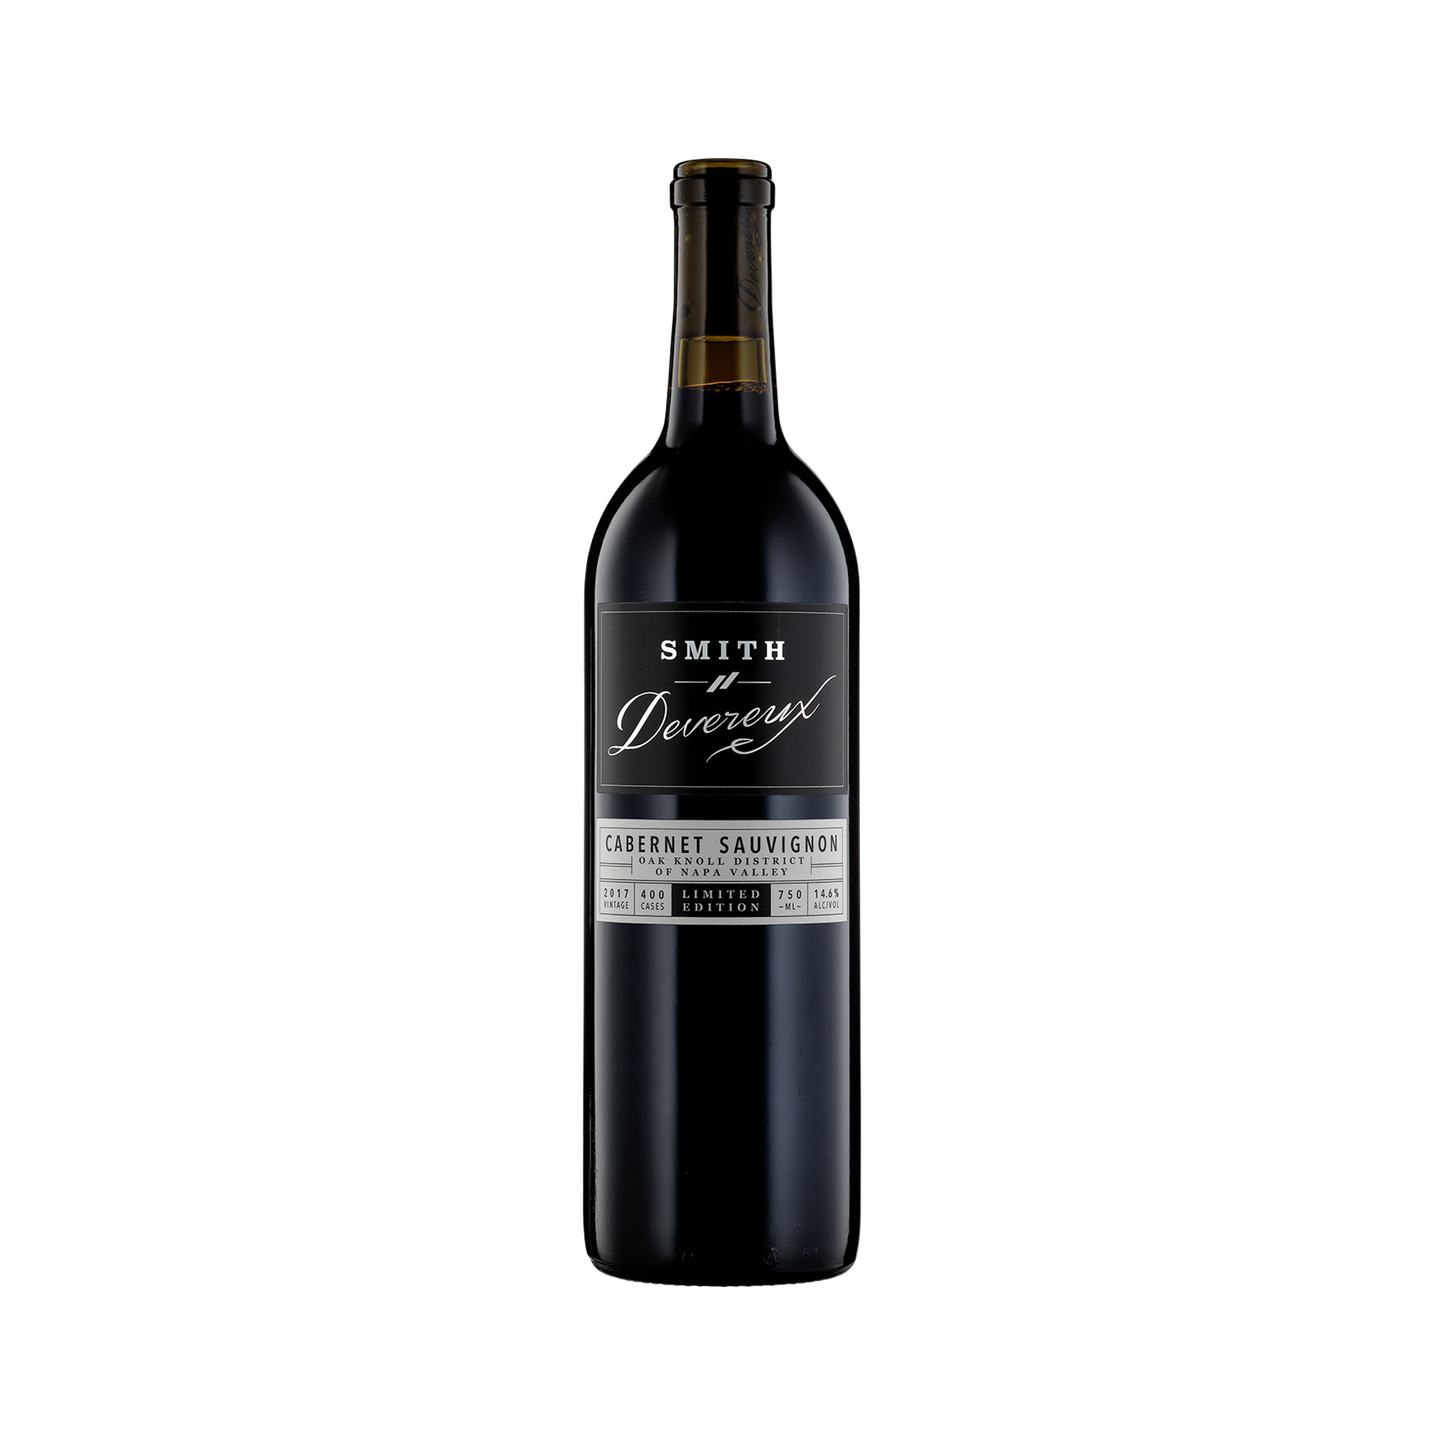 A bottle of Smith-Devereux 2017 Cabernet Sauvignon Limited Edition